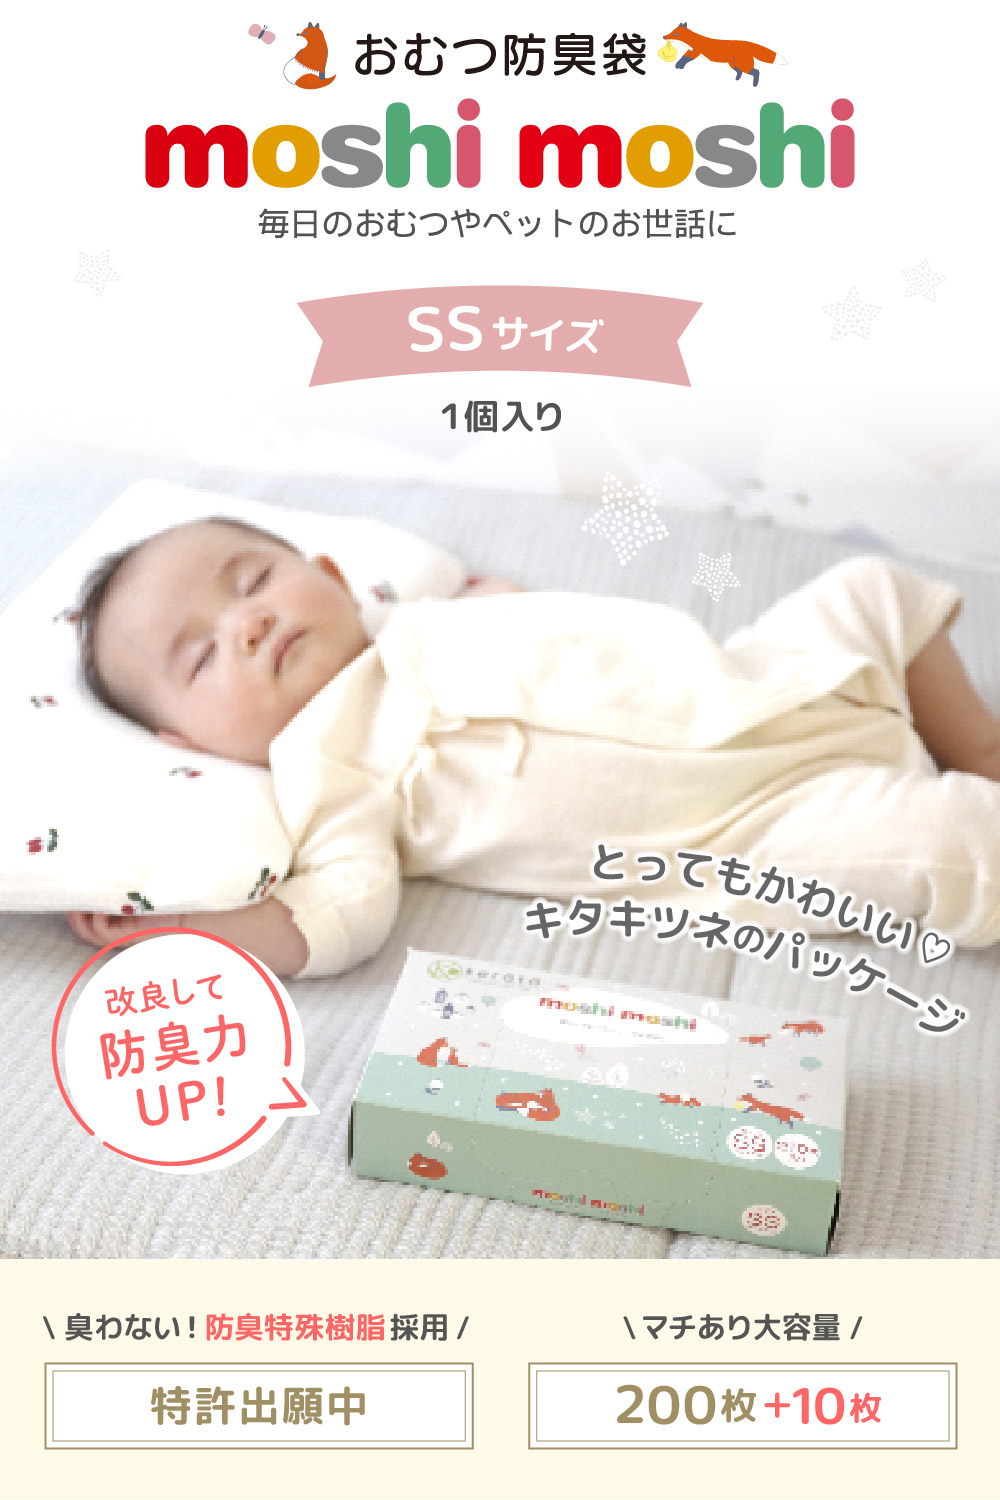 [ улучшение версия ](kelata) moshimoshi подгузники дезодорация пакет SS запах . нет пакет ... нет дезодорация Homme tsu... младенец вставка имеется 